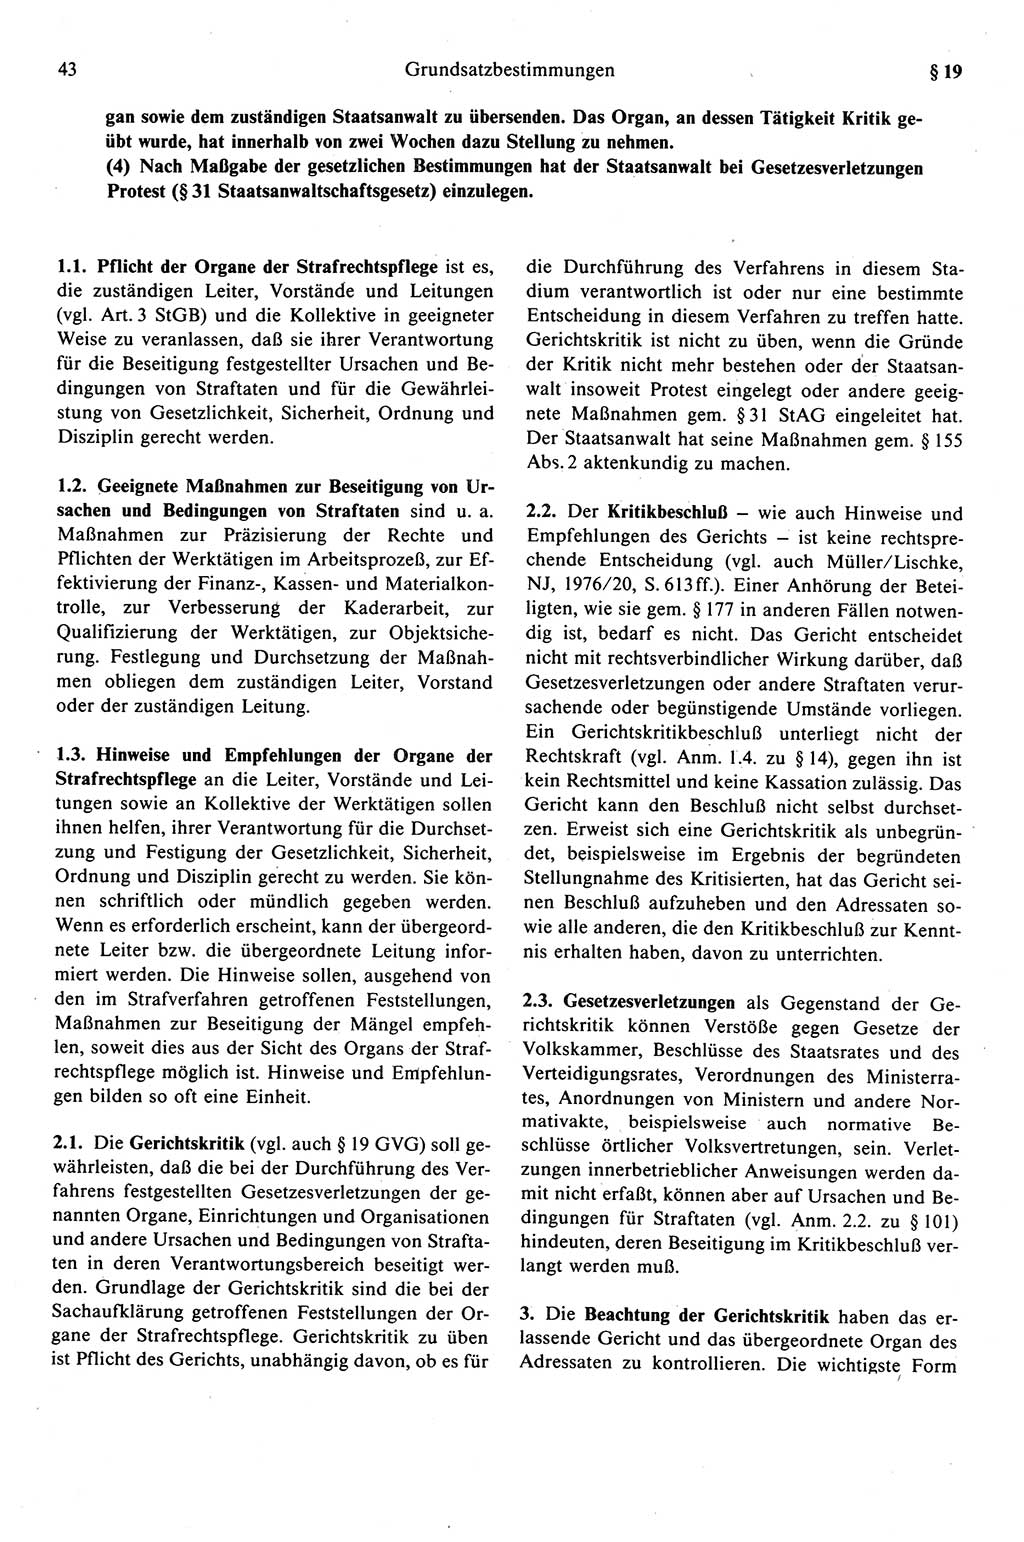 Strafprozeßrecht der DDR (Deutsche Demokratische Republik), Kommentar zur Strafprozeßordnung (StPO) 1989, Seite 43 (Strafprozeßr. DDR Komm. StPO 1989, S. 43)